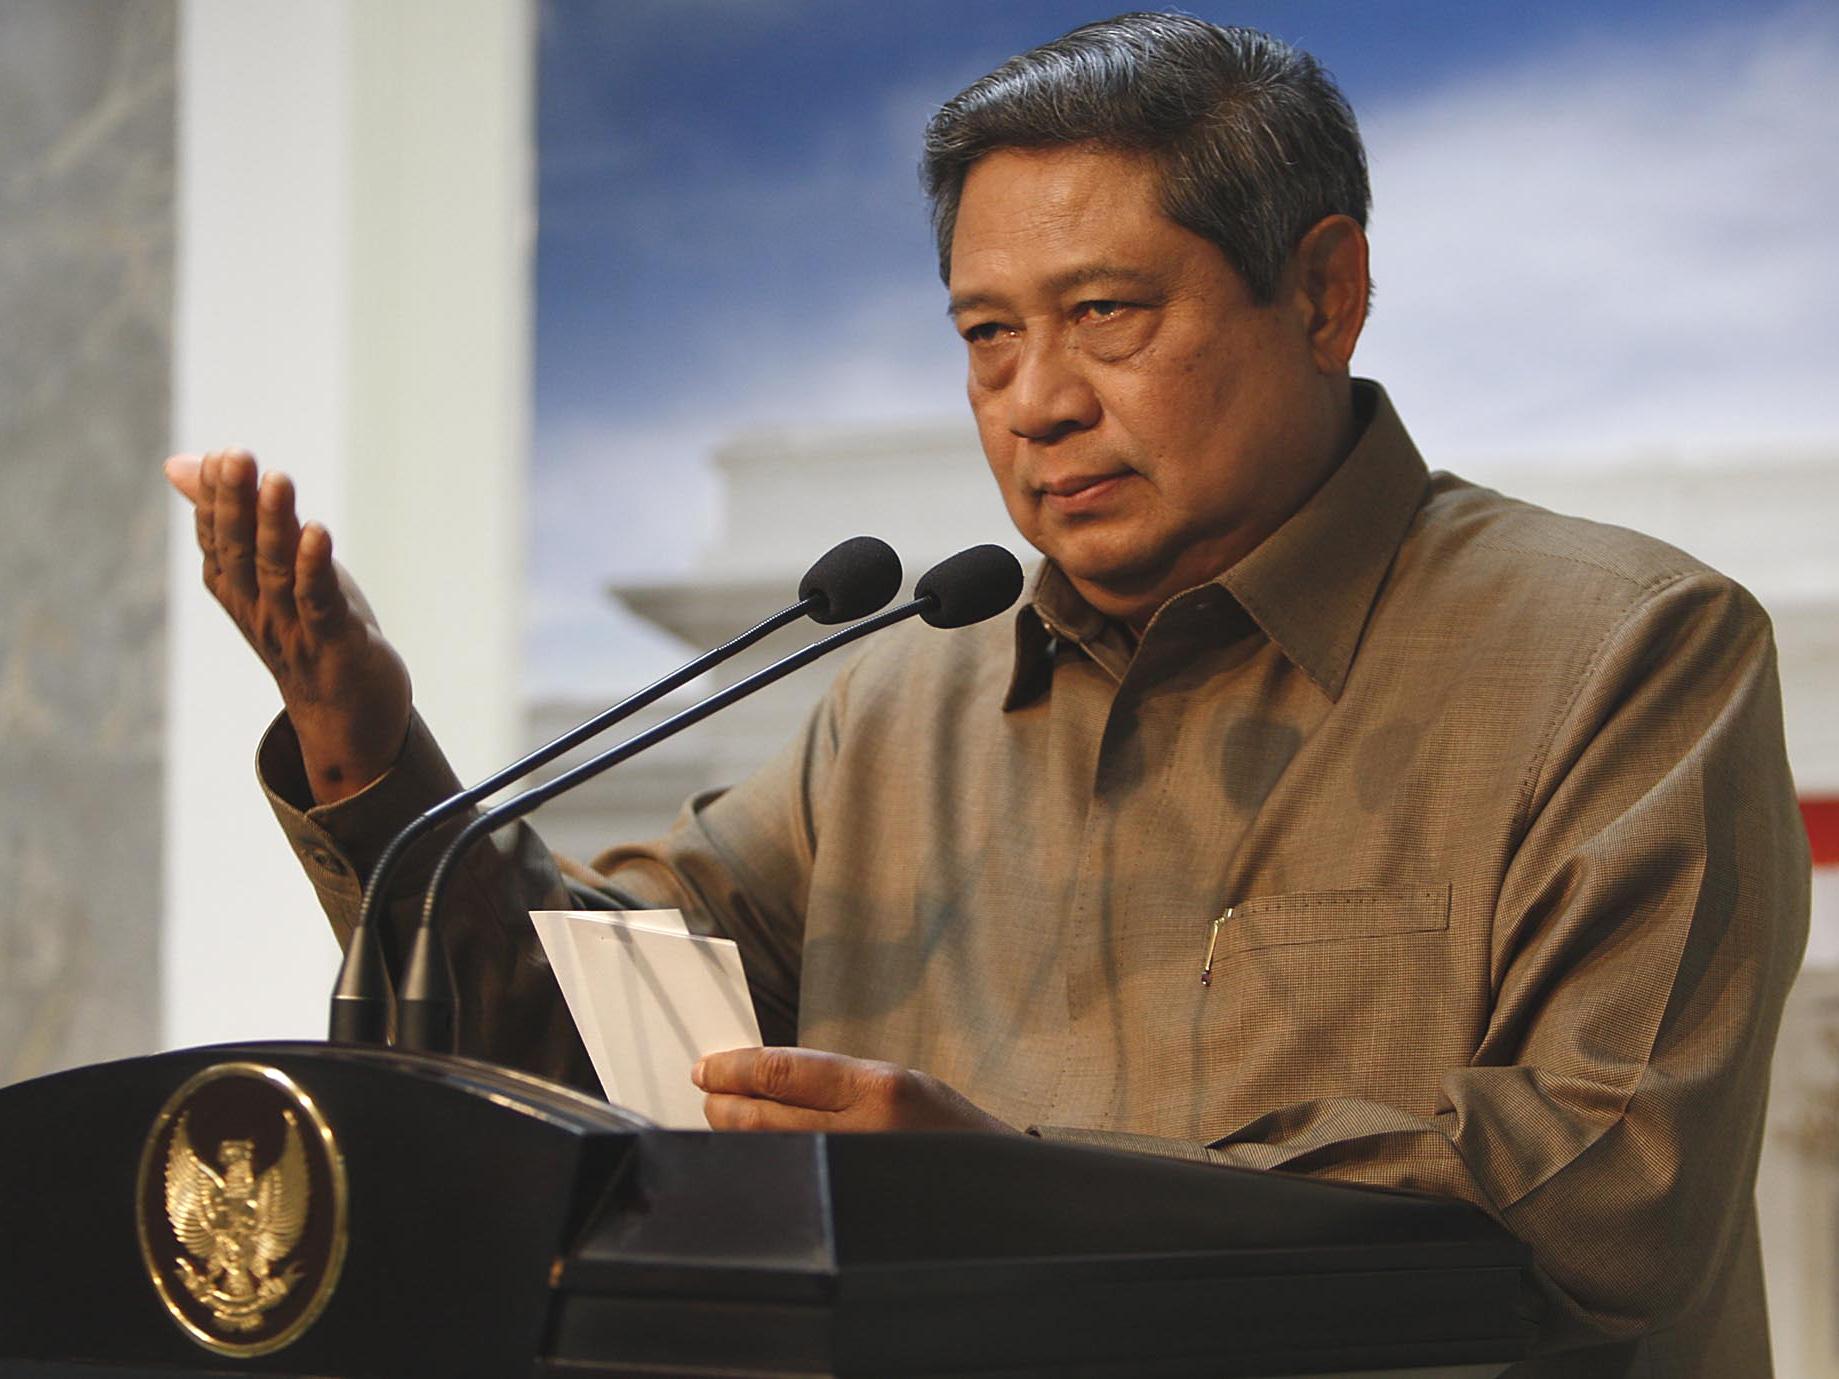 Presiden SBY  Frustasi Oleh Korupsi, Rakyat Akan Berontak